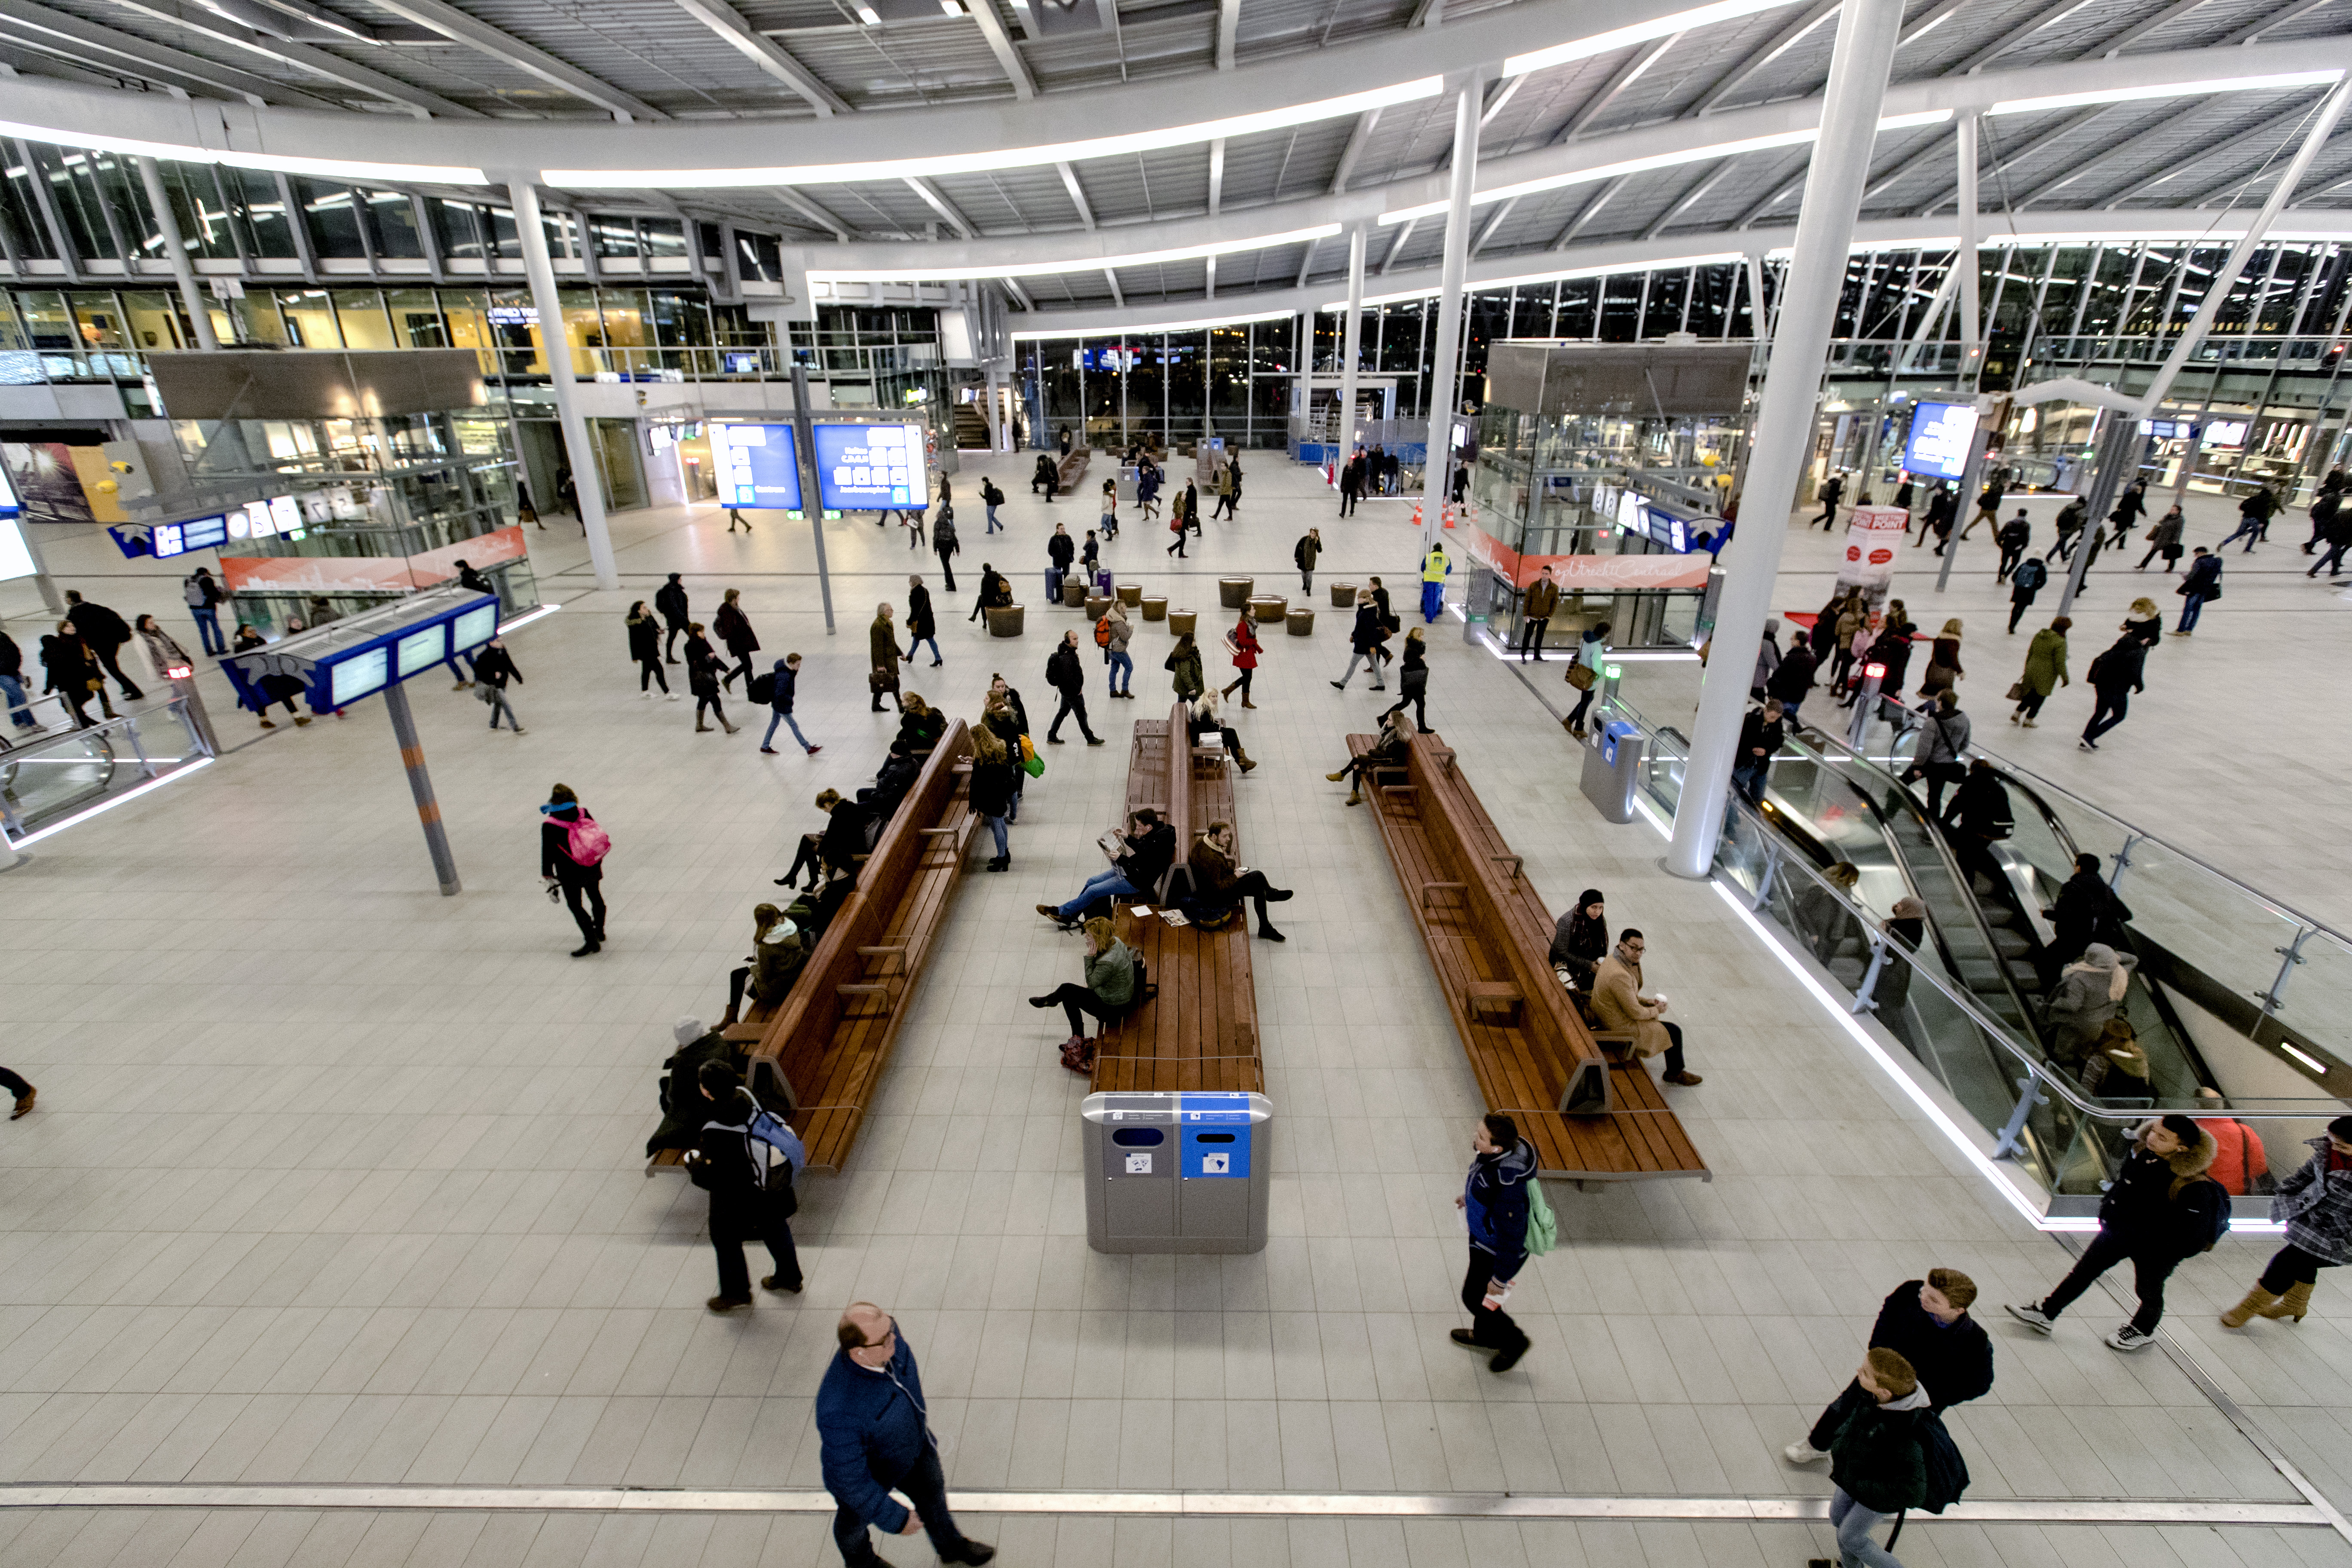 2016-12-07 07:54:10 UTRECHT - Reizigers in de nieuwe stationshal van Utrecht Centraal. Aan de verbouwing van het drukste station van Nederland is sinds 2013 gewerkt. ANP SANDER KONING